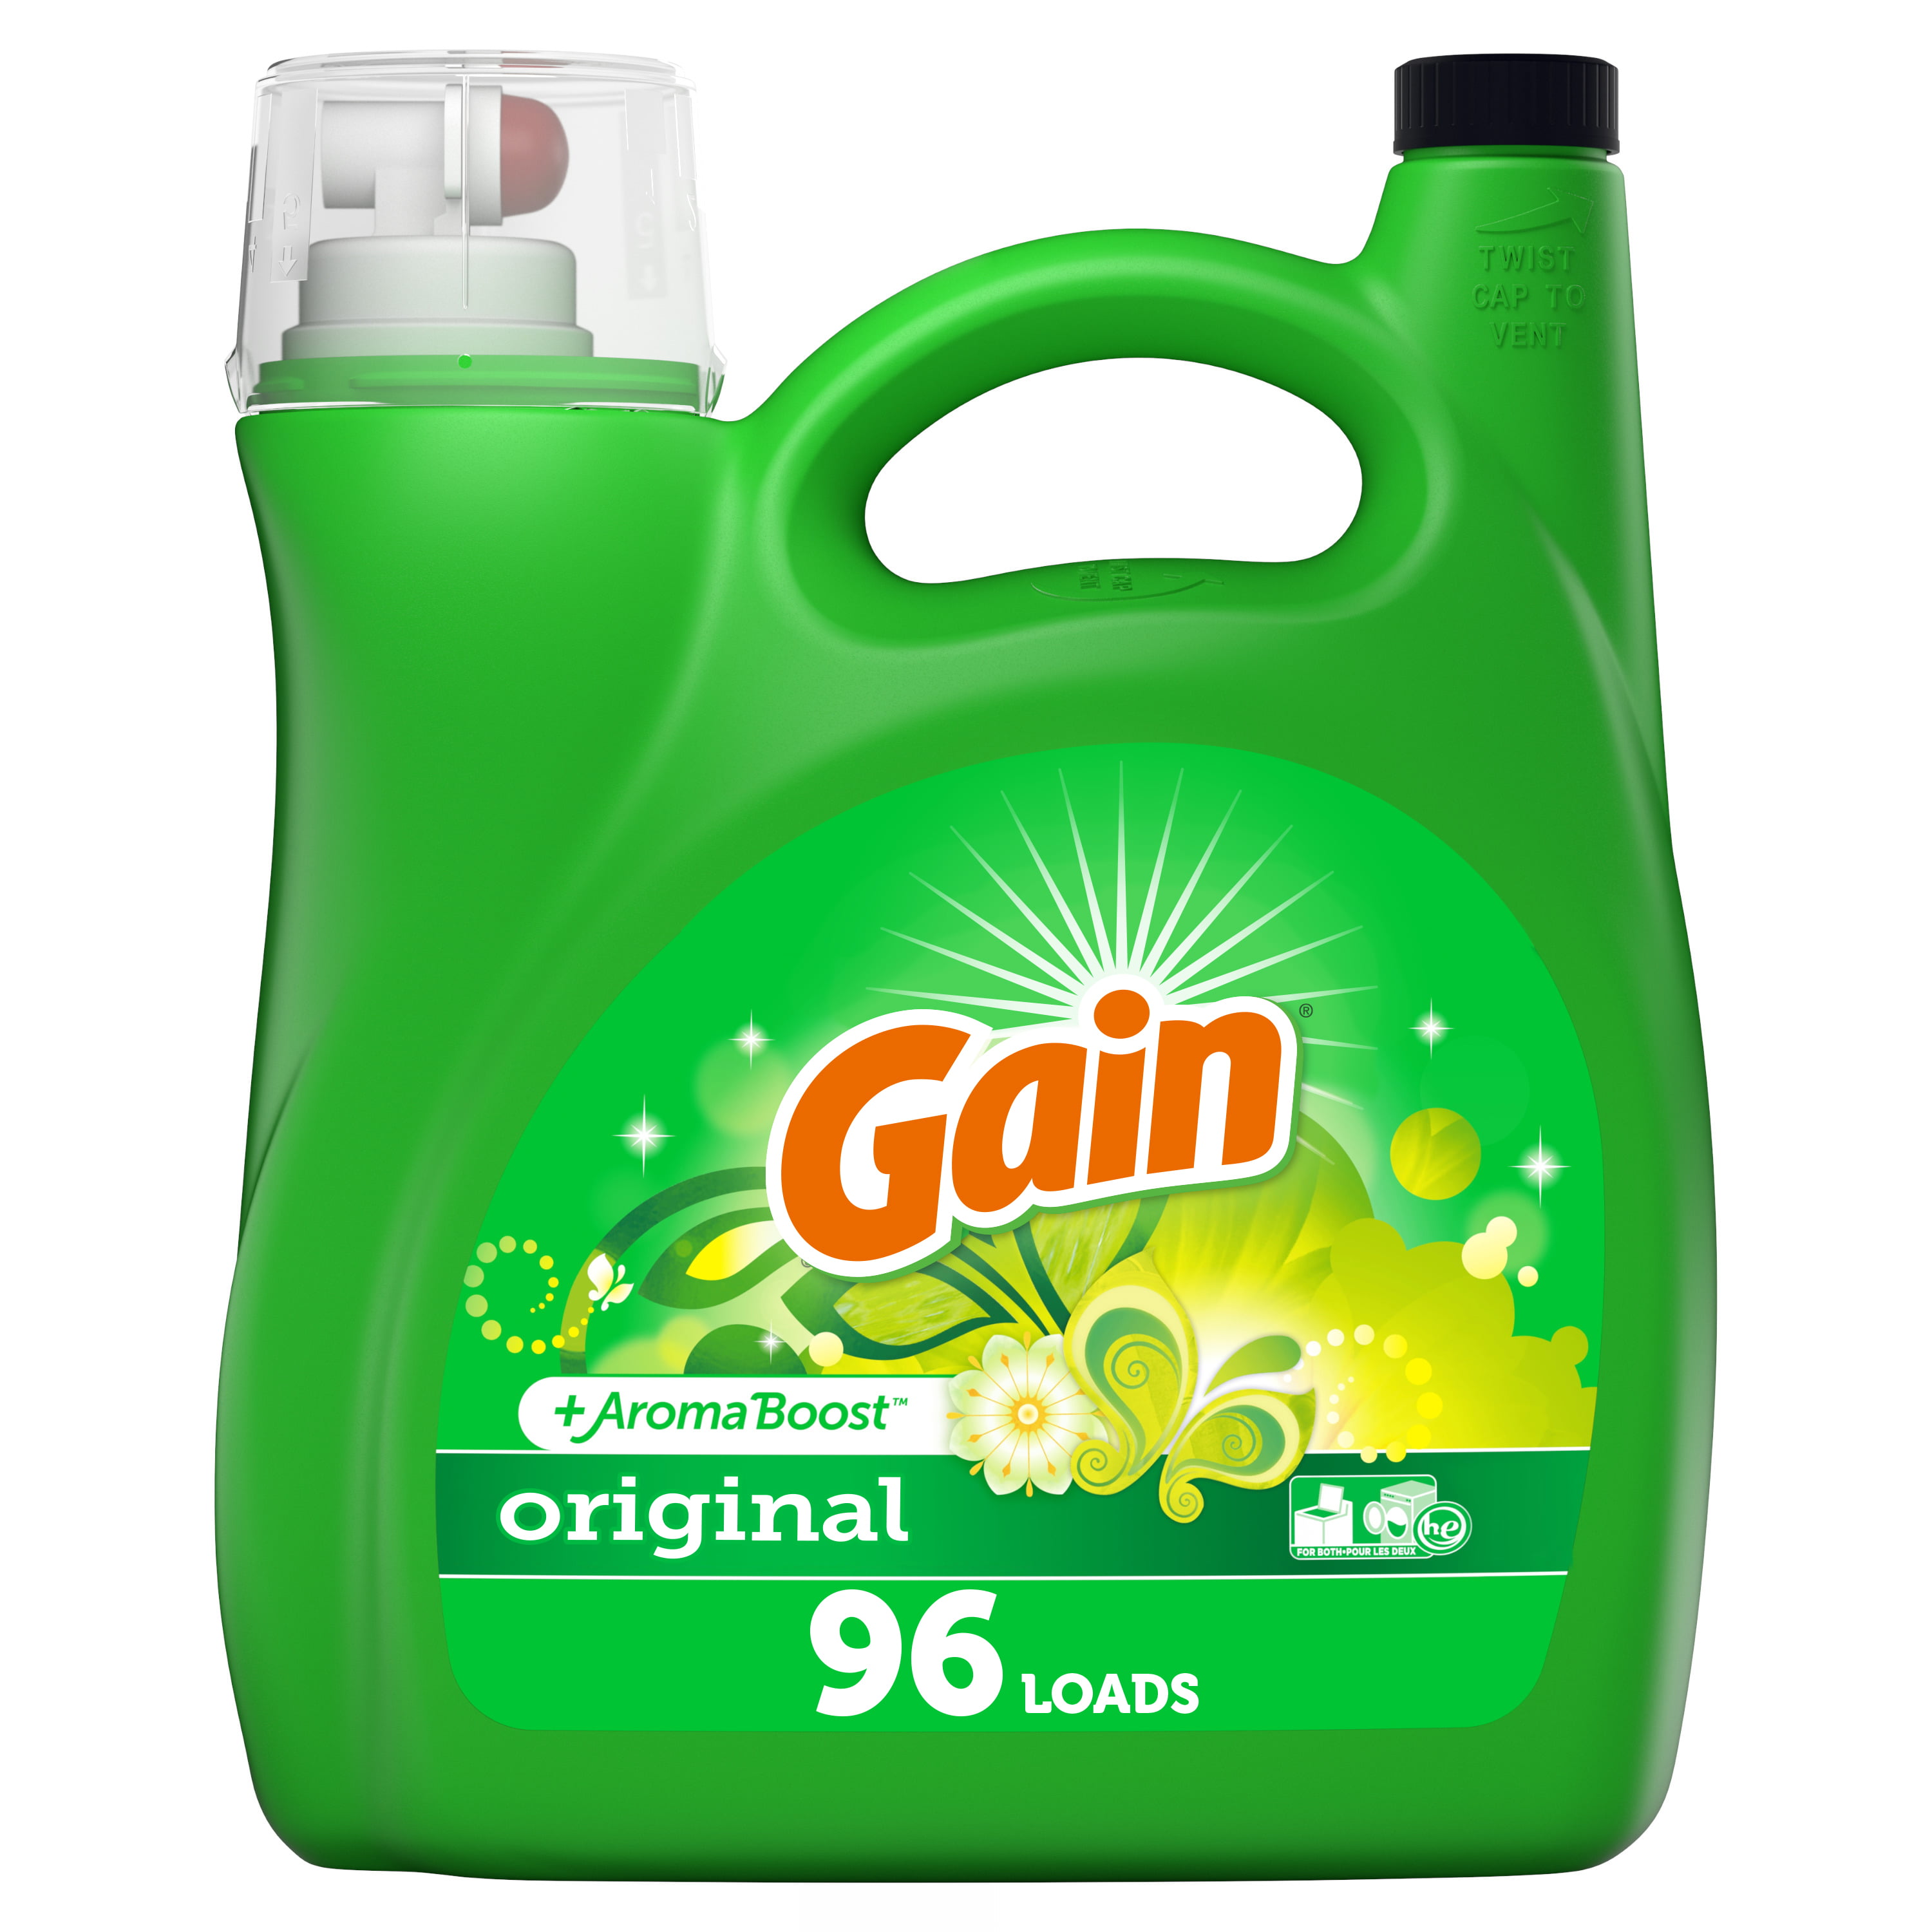 cloth detergent